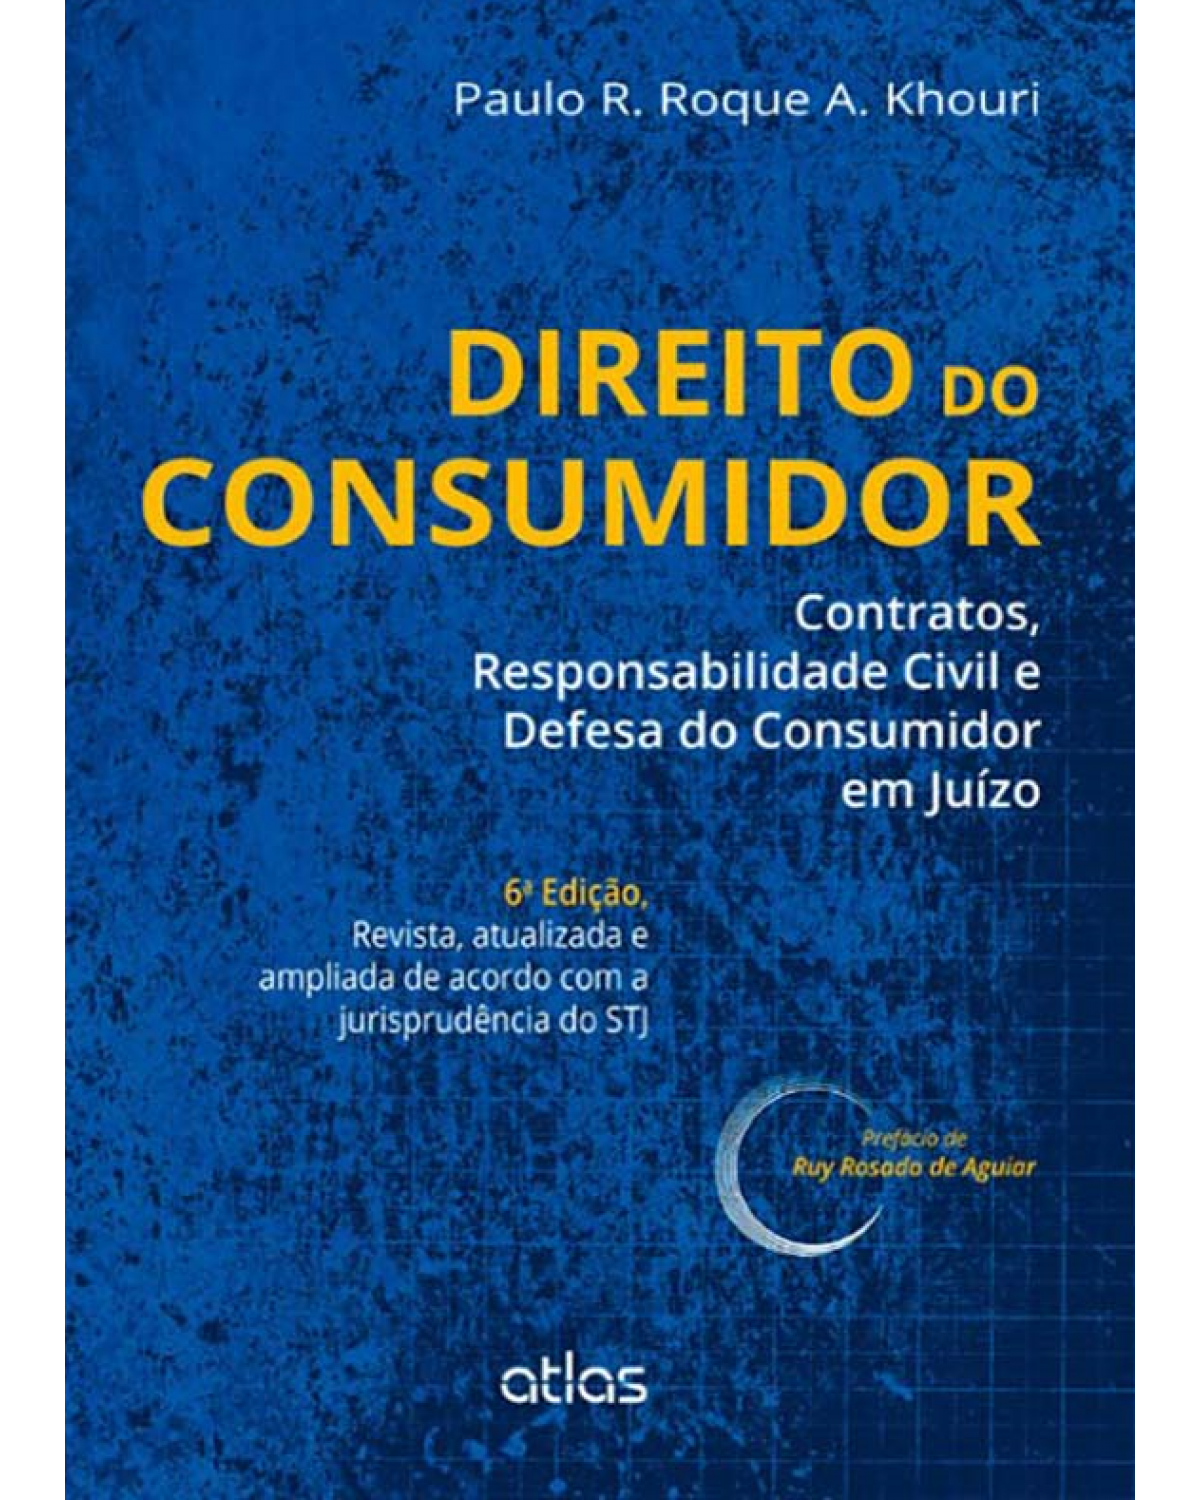 Direito do consumidor - Contratos, responsabilidade civil e defesa do consumidor em juízo - 6ª Edição | 2013